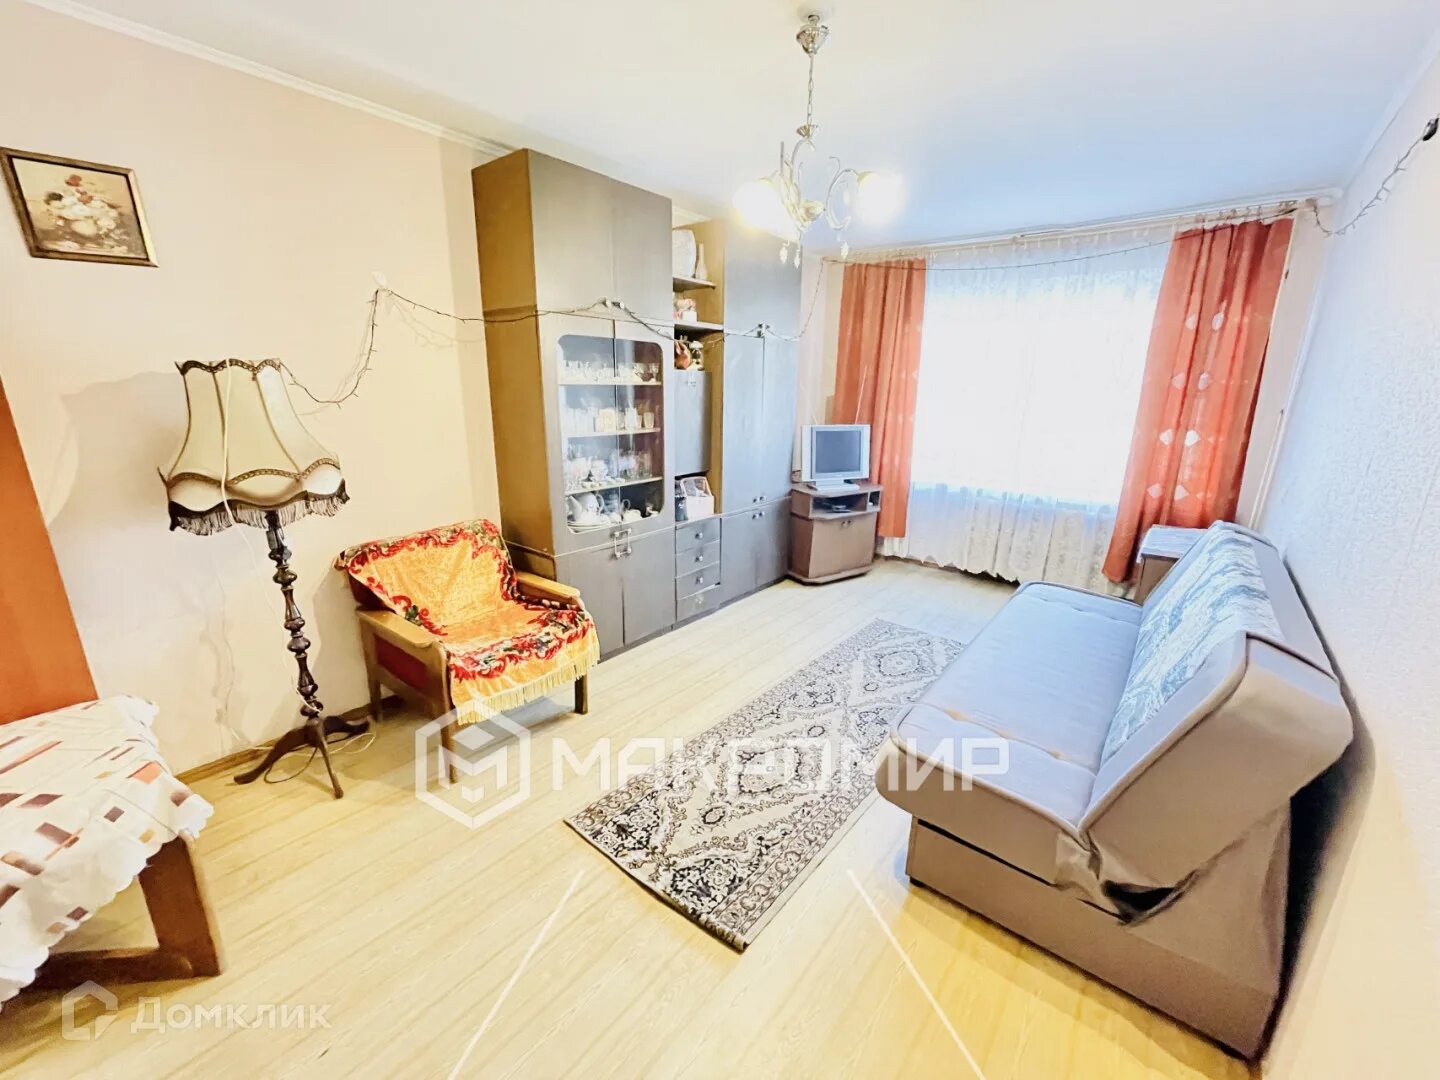 Купить квартиру в калининграде недорого 1 комнатную. Калининград ул.Коммунальная 31 фото.